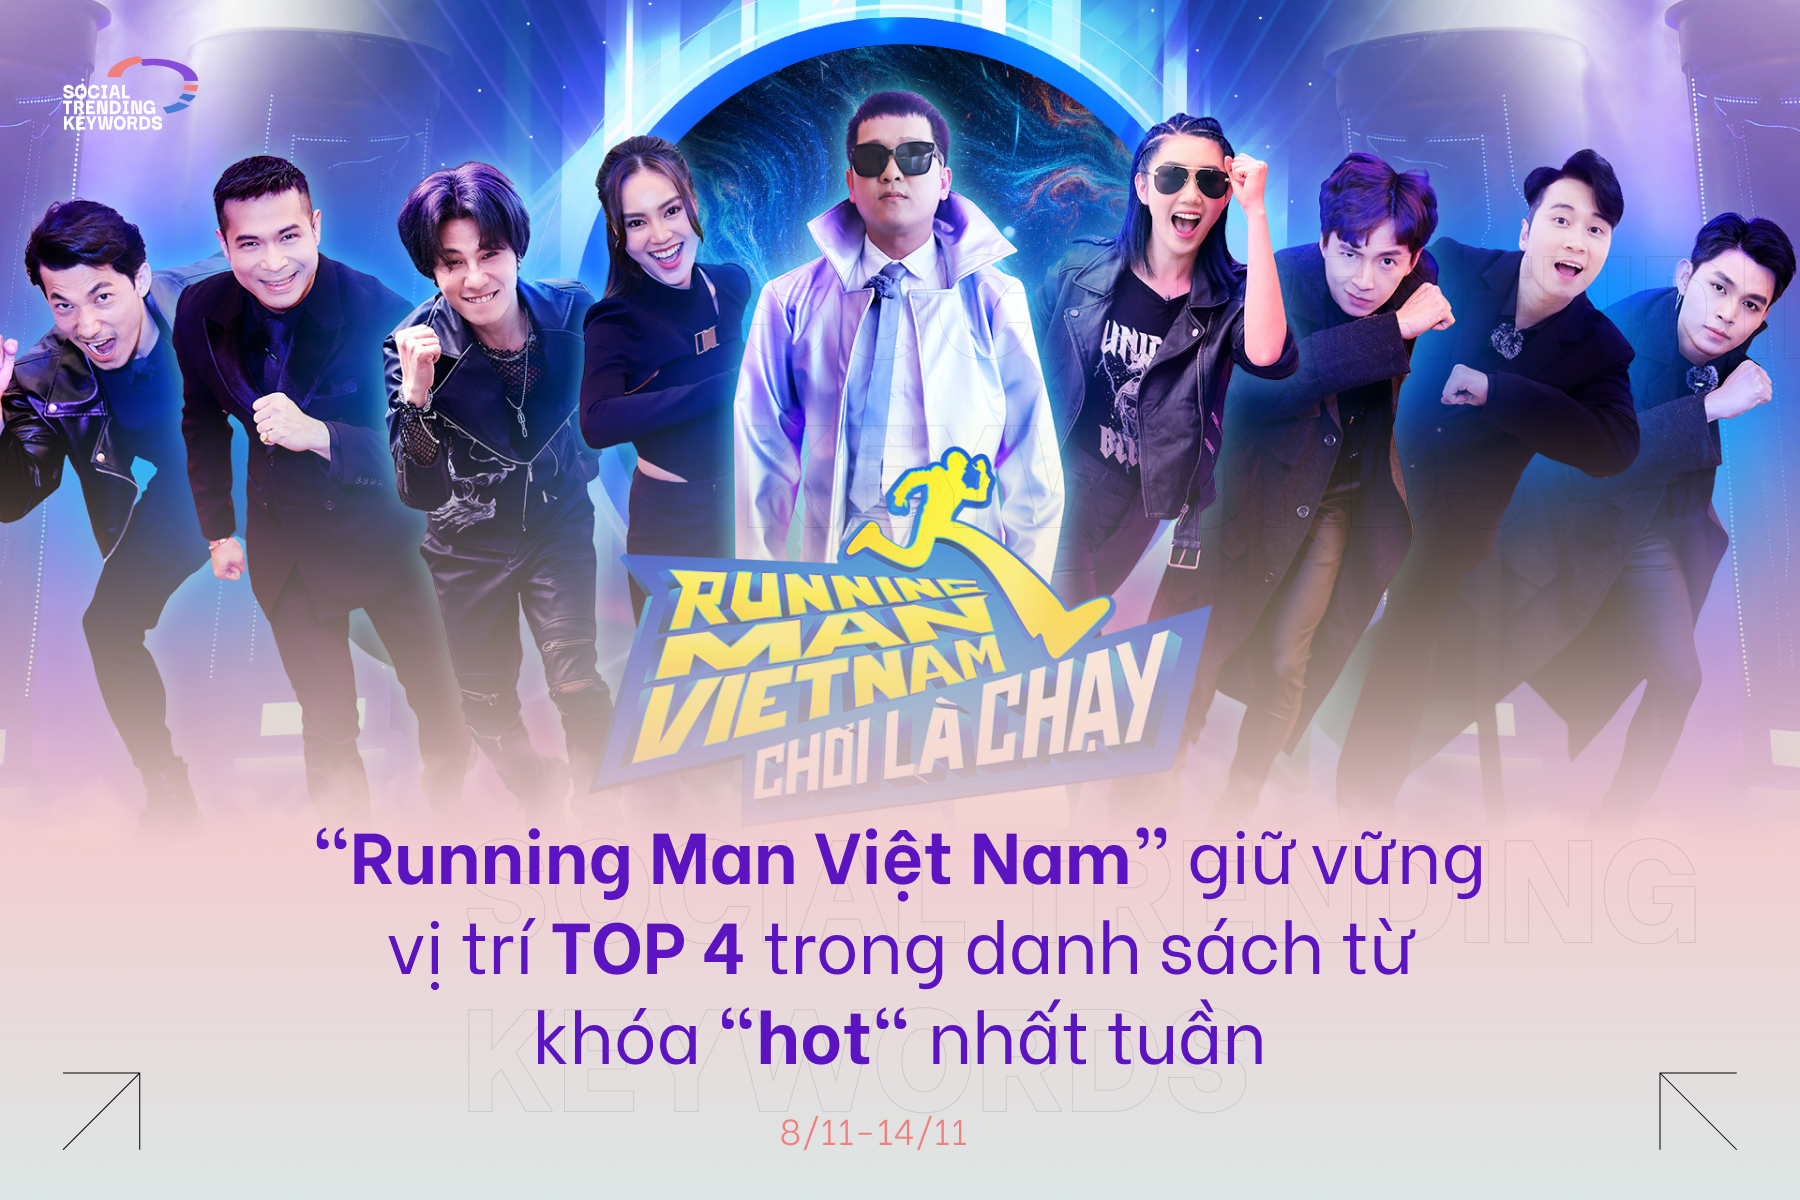 #SocialTrendingKeywords: “Running Man Việt Nam” giữ vững vị trí top 4 trong danh sách từ khóa "hot" nhất tuần 8/11-14/11